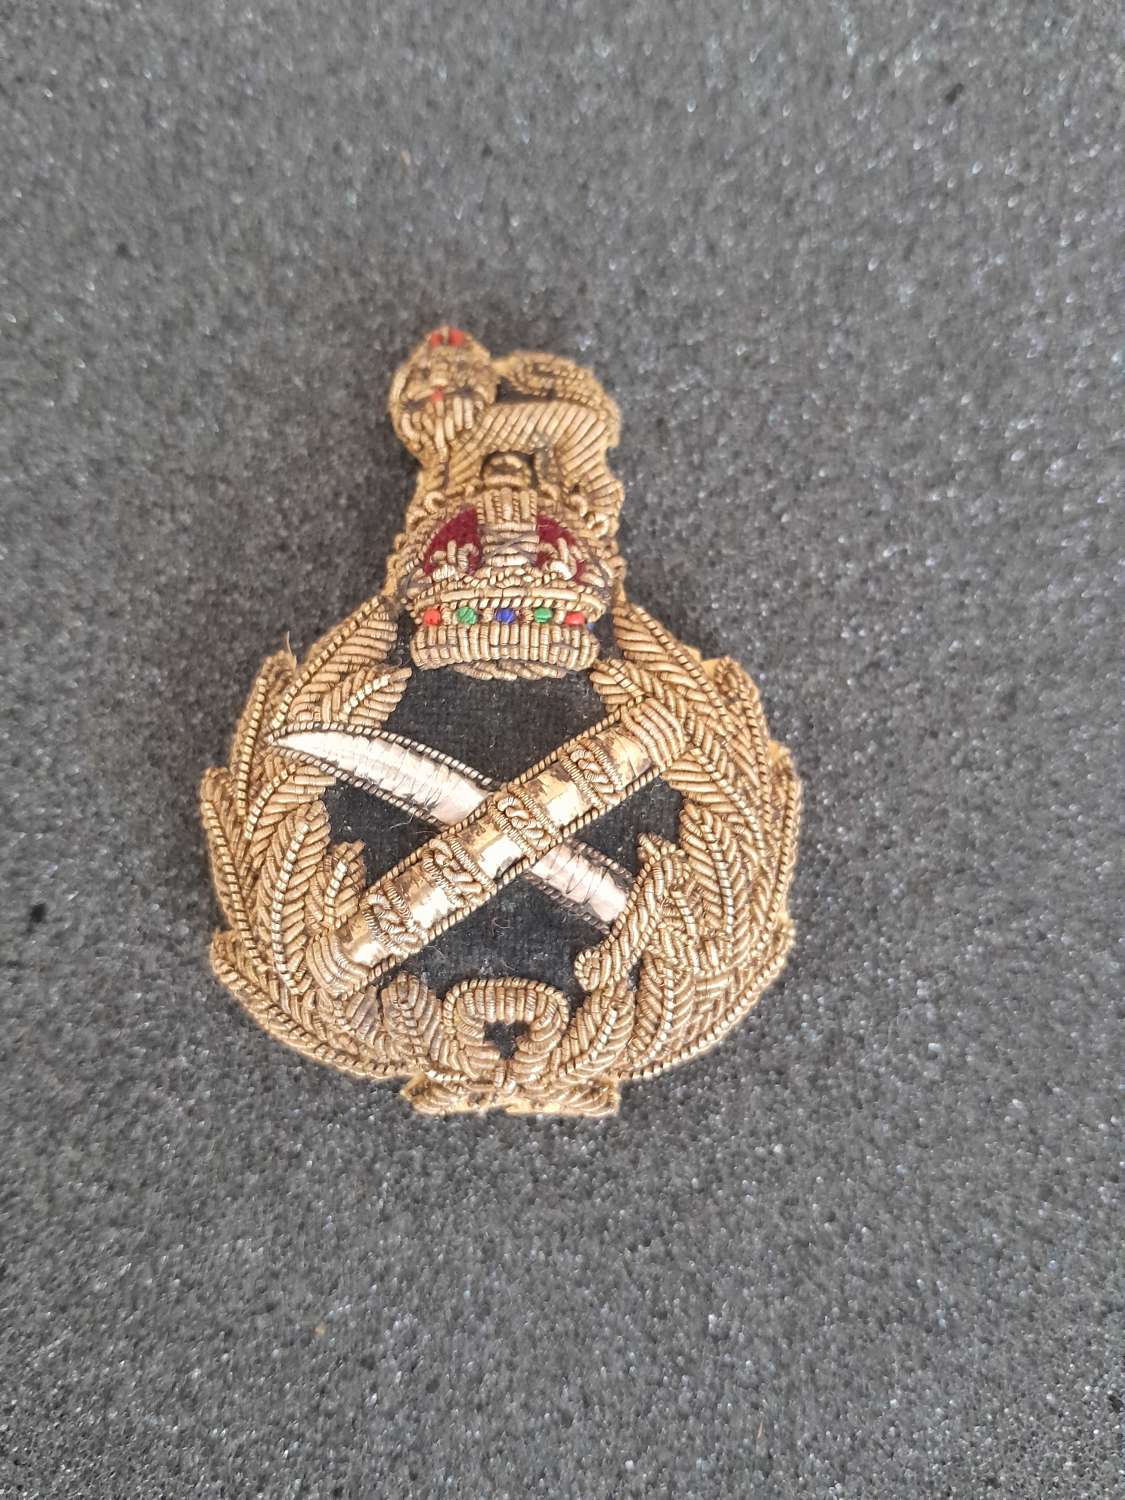 General Officers Bullion Cap Badge Kings Crown